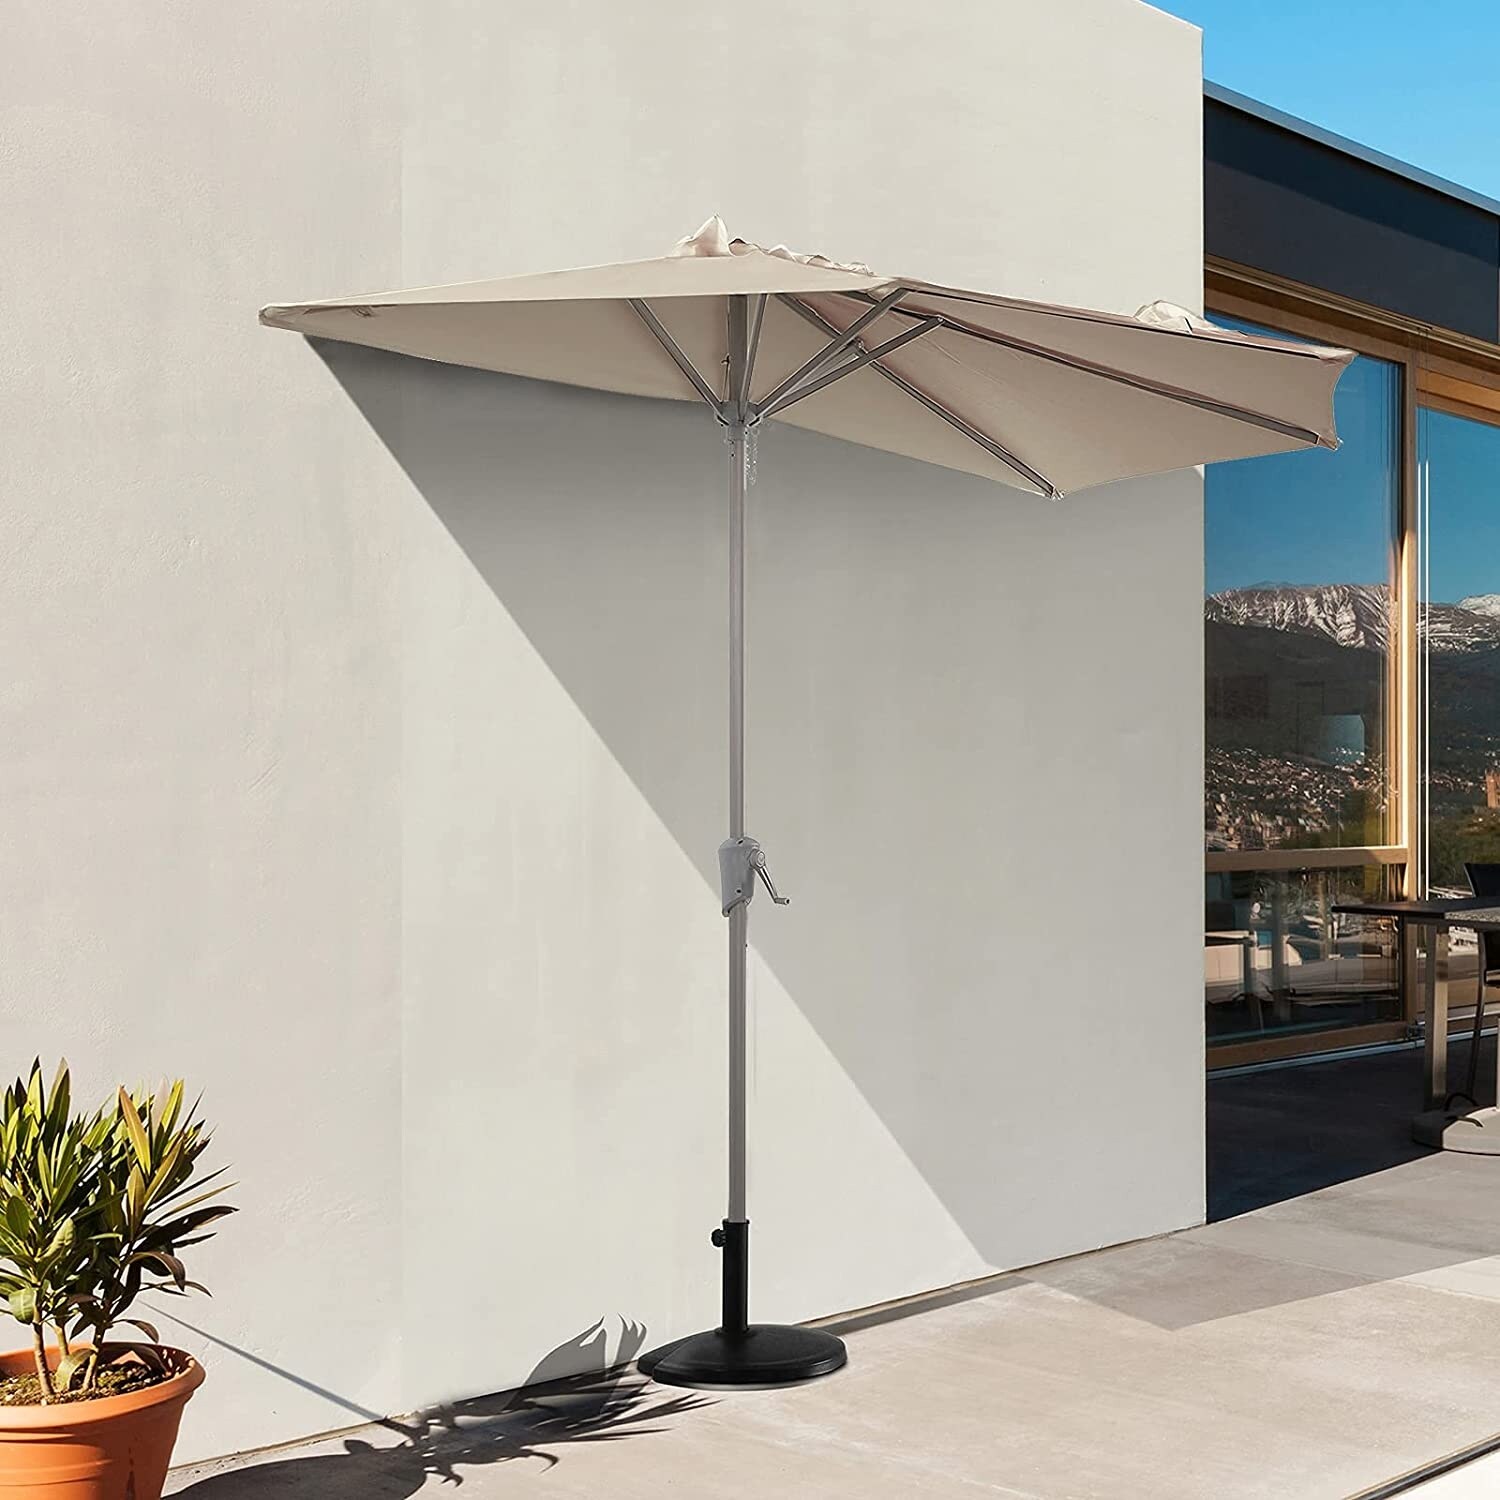 FLAME&SHADE 7.5 Patio Umbrella Outdoor Market Style for Small Balcony Garden Restaurant Café Backyard with Tilting Beige 